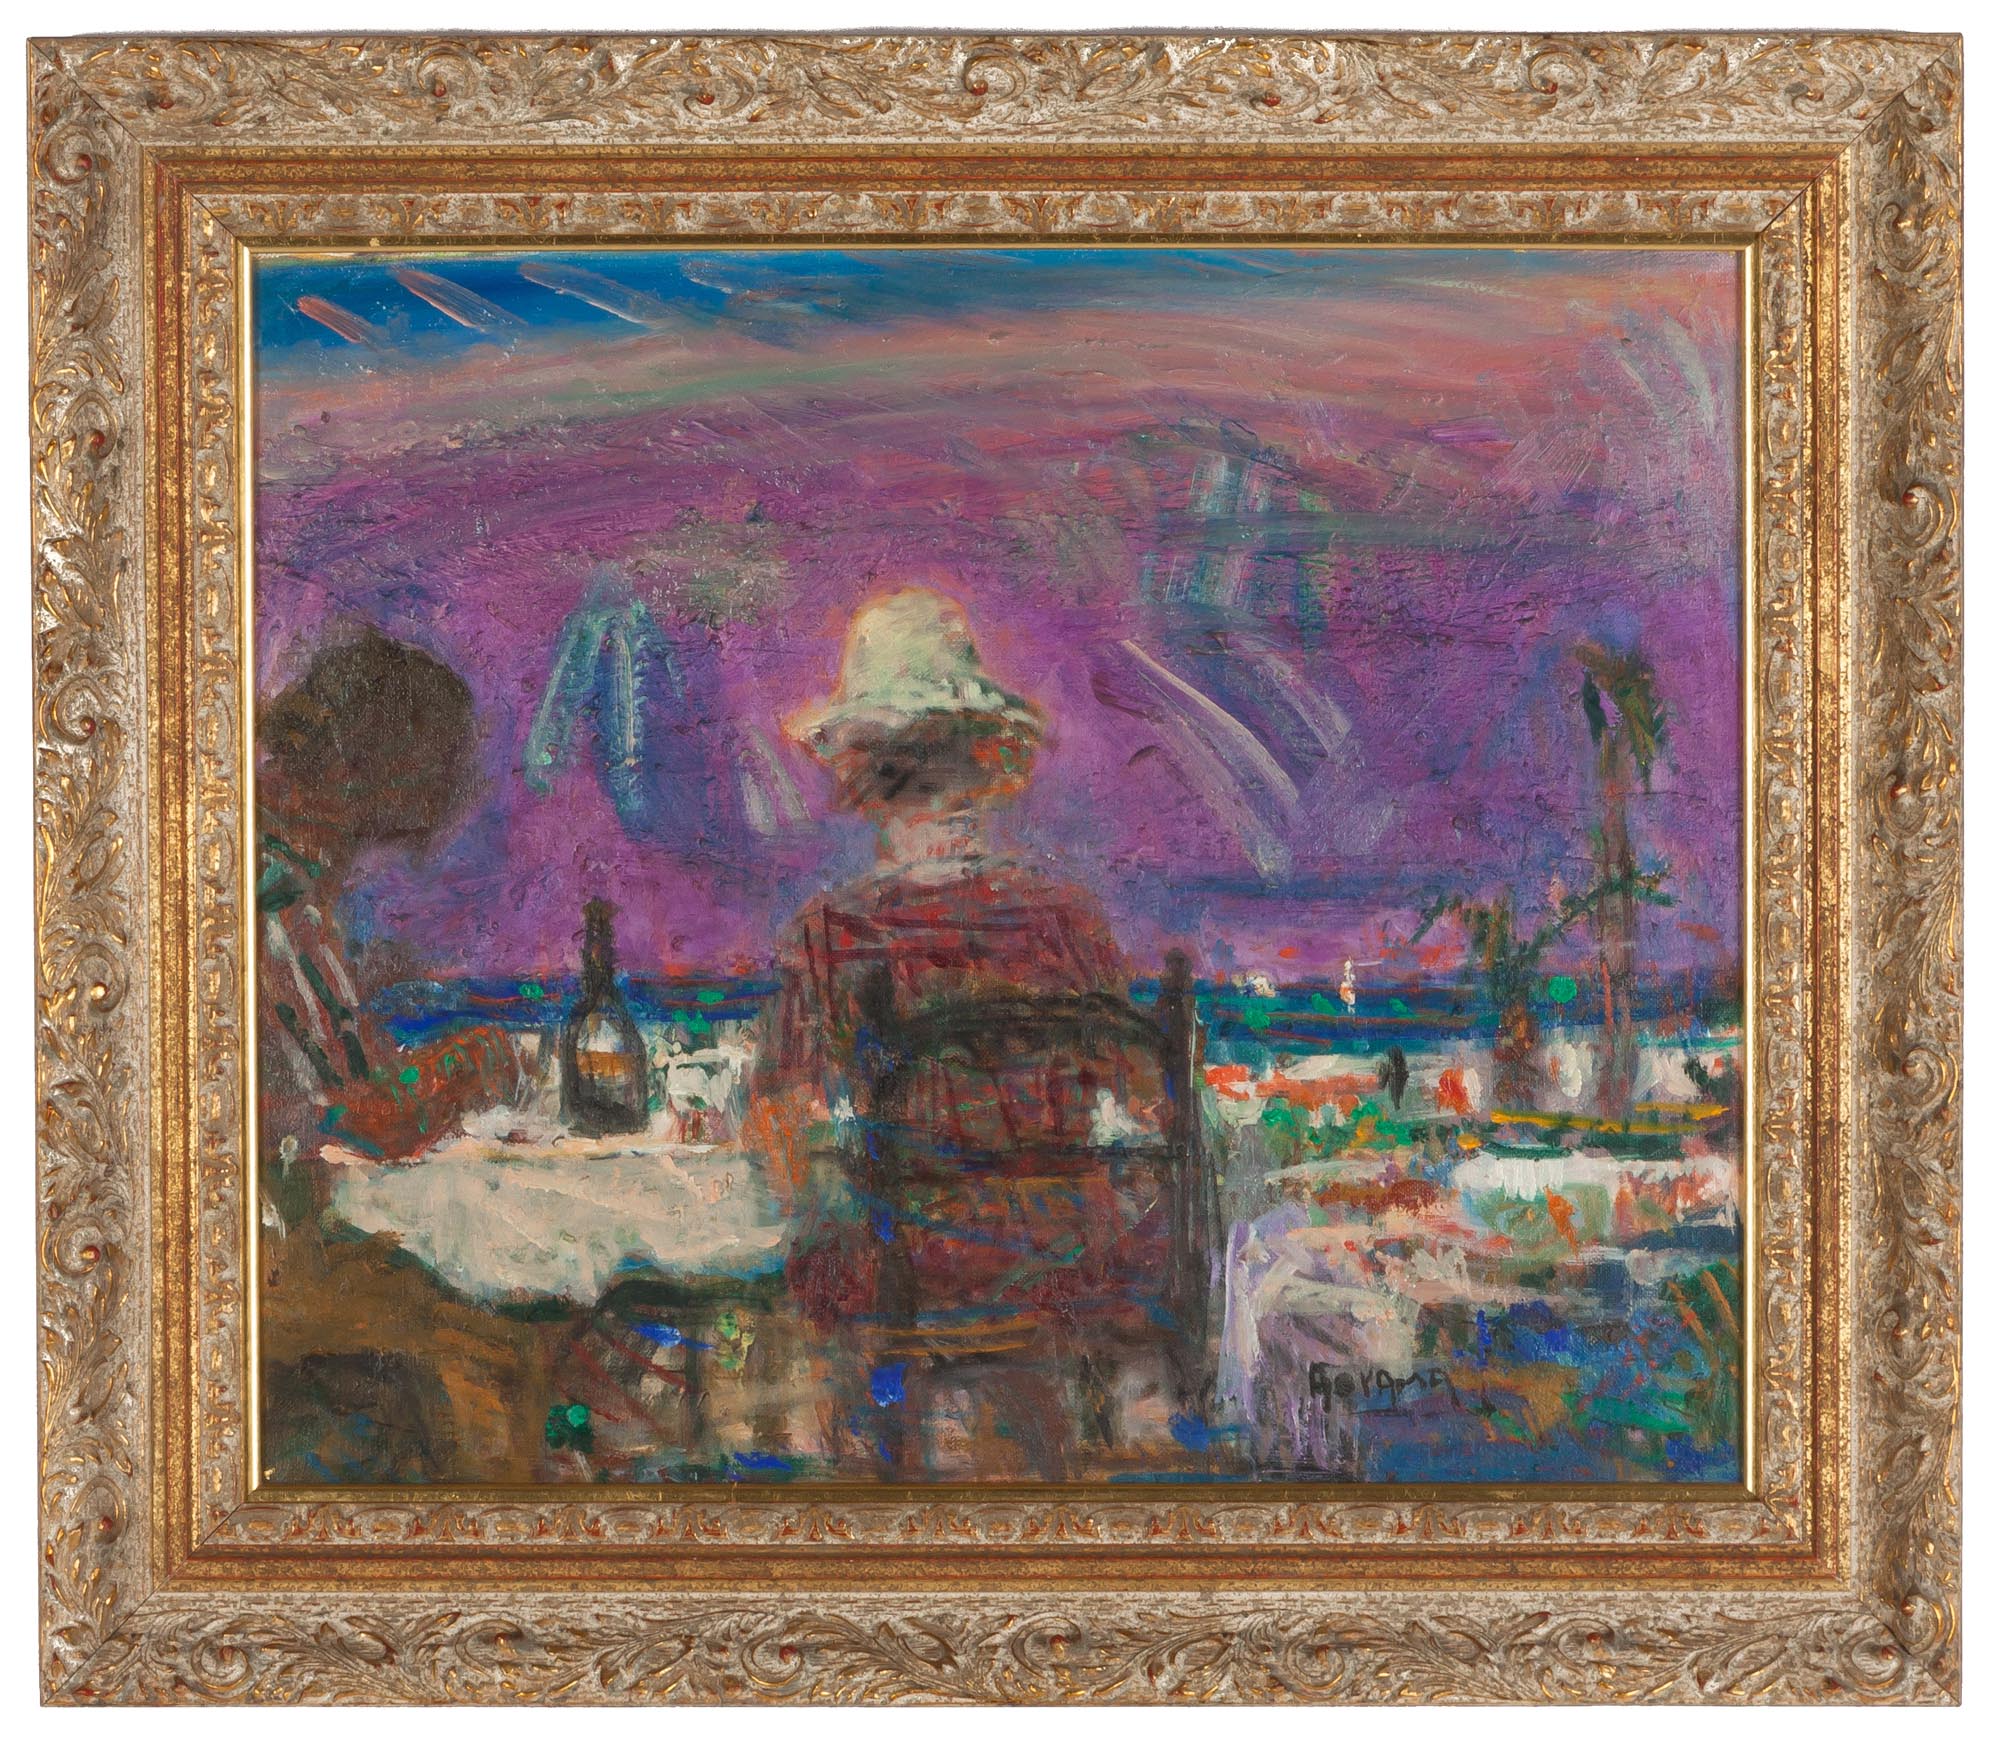 Yoshio Aoyama (Japanese, 1894-1996) "Nice, France". Oil on canvas. Signed 'Aoyama' (lower right).